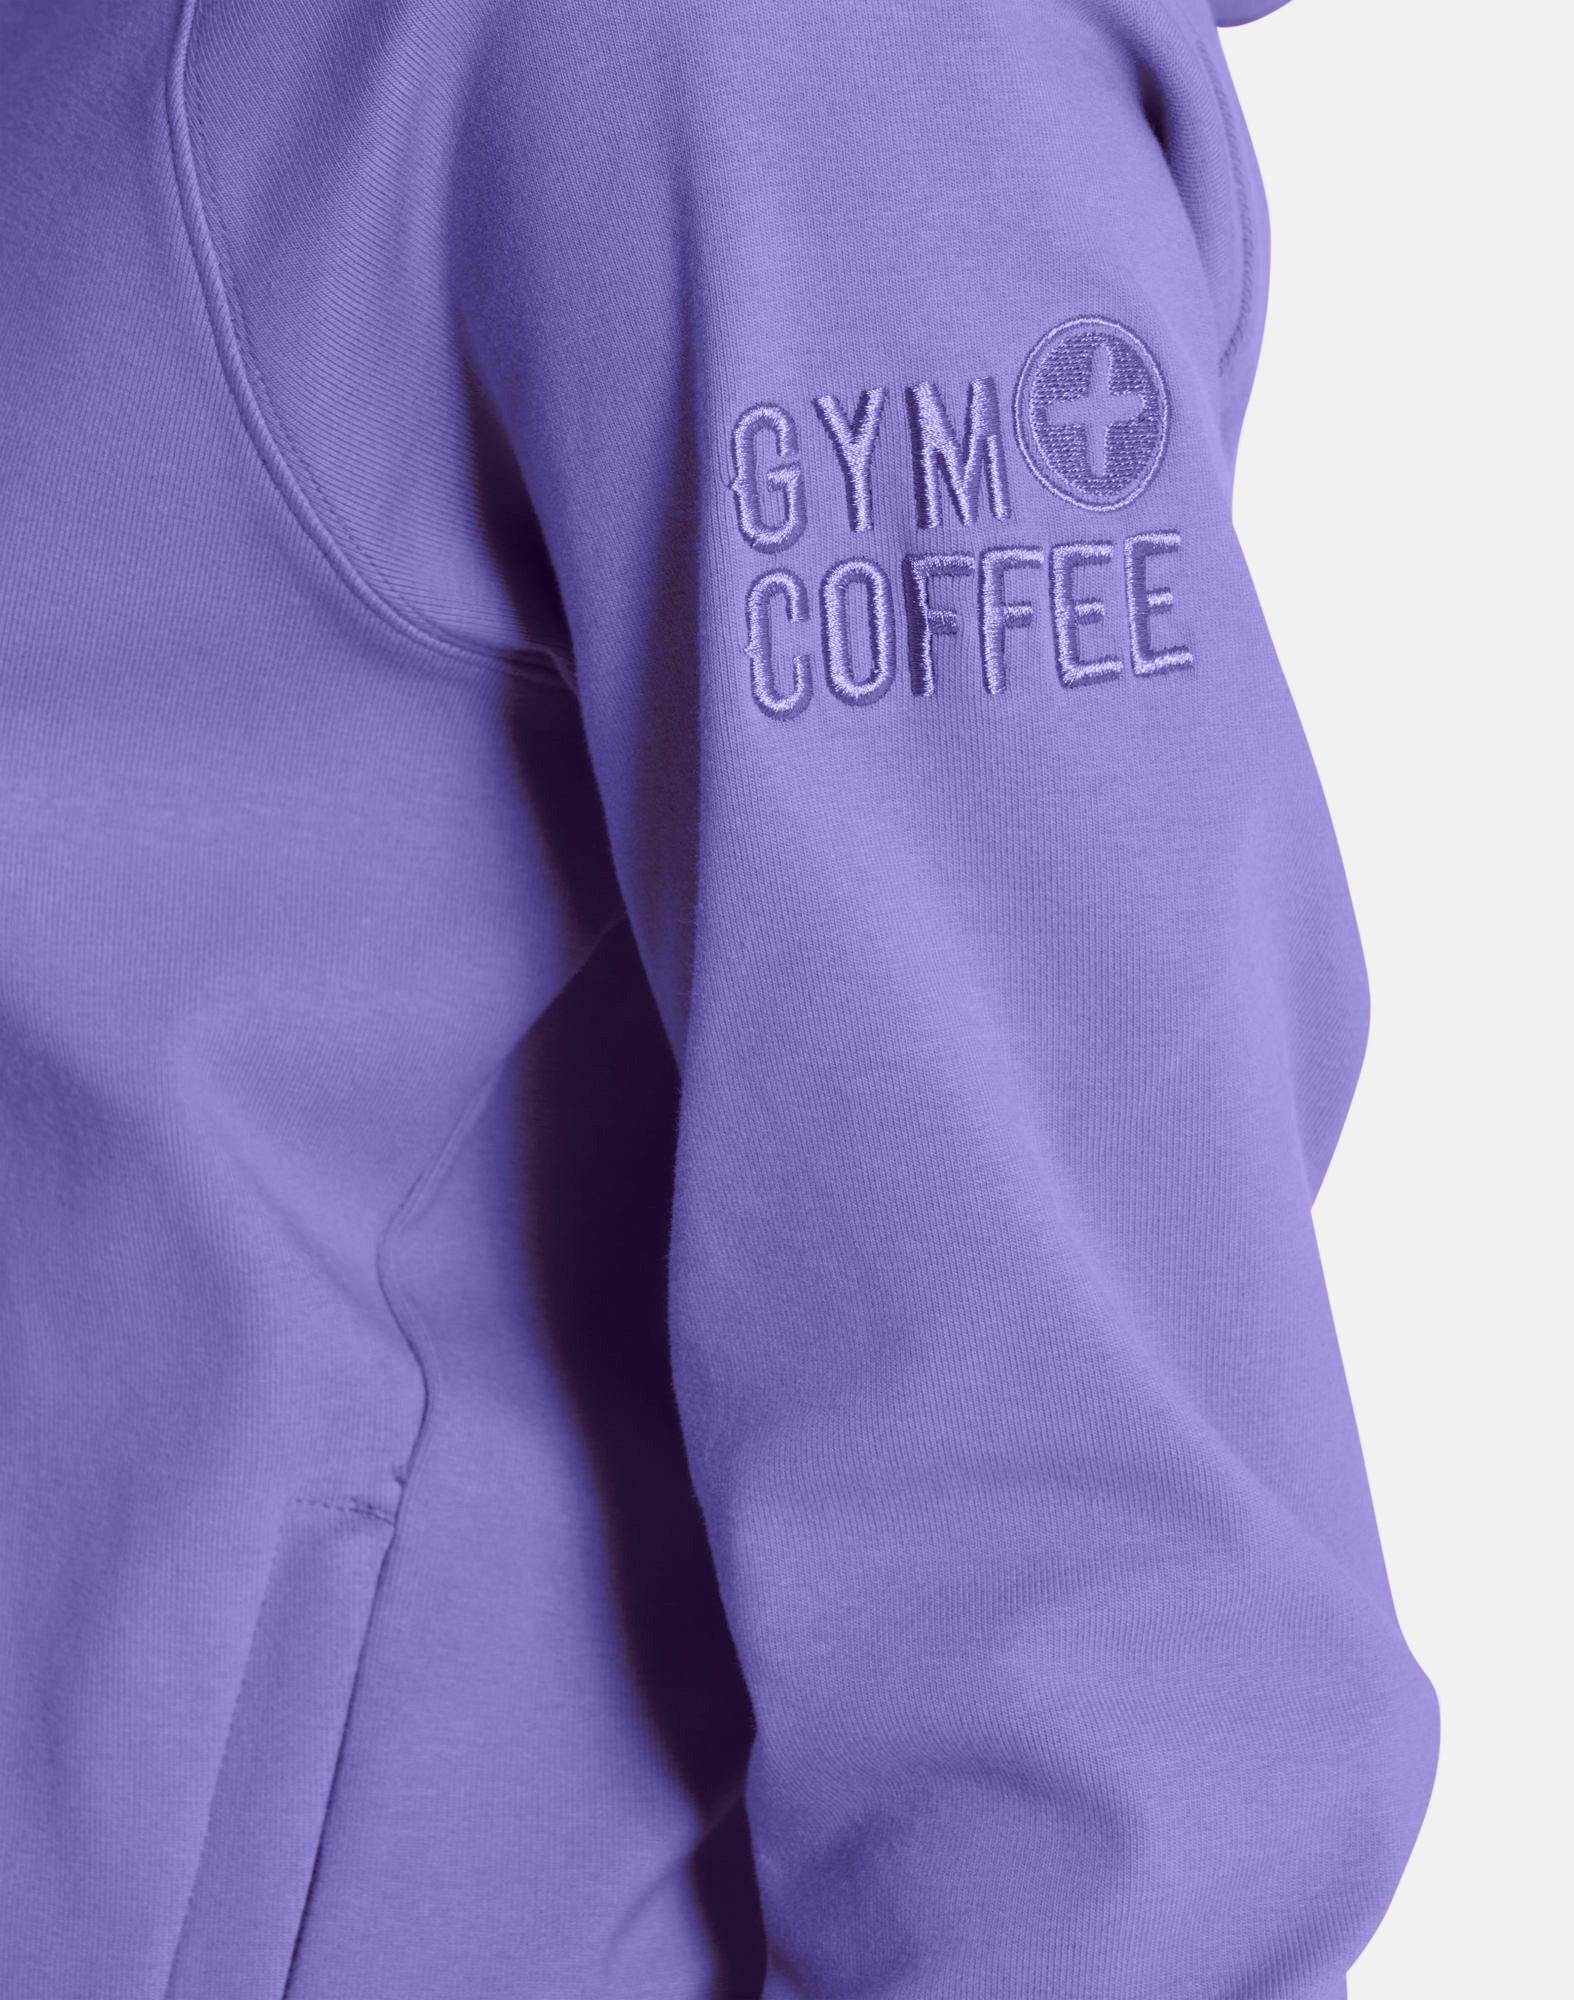 Essential Hoodie in Lavender - Hoodies - Gym+Coffee